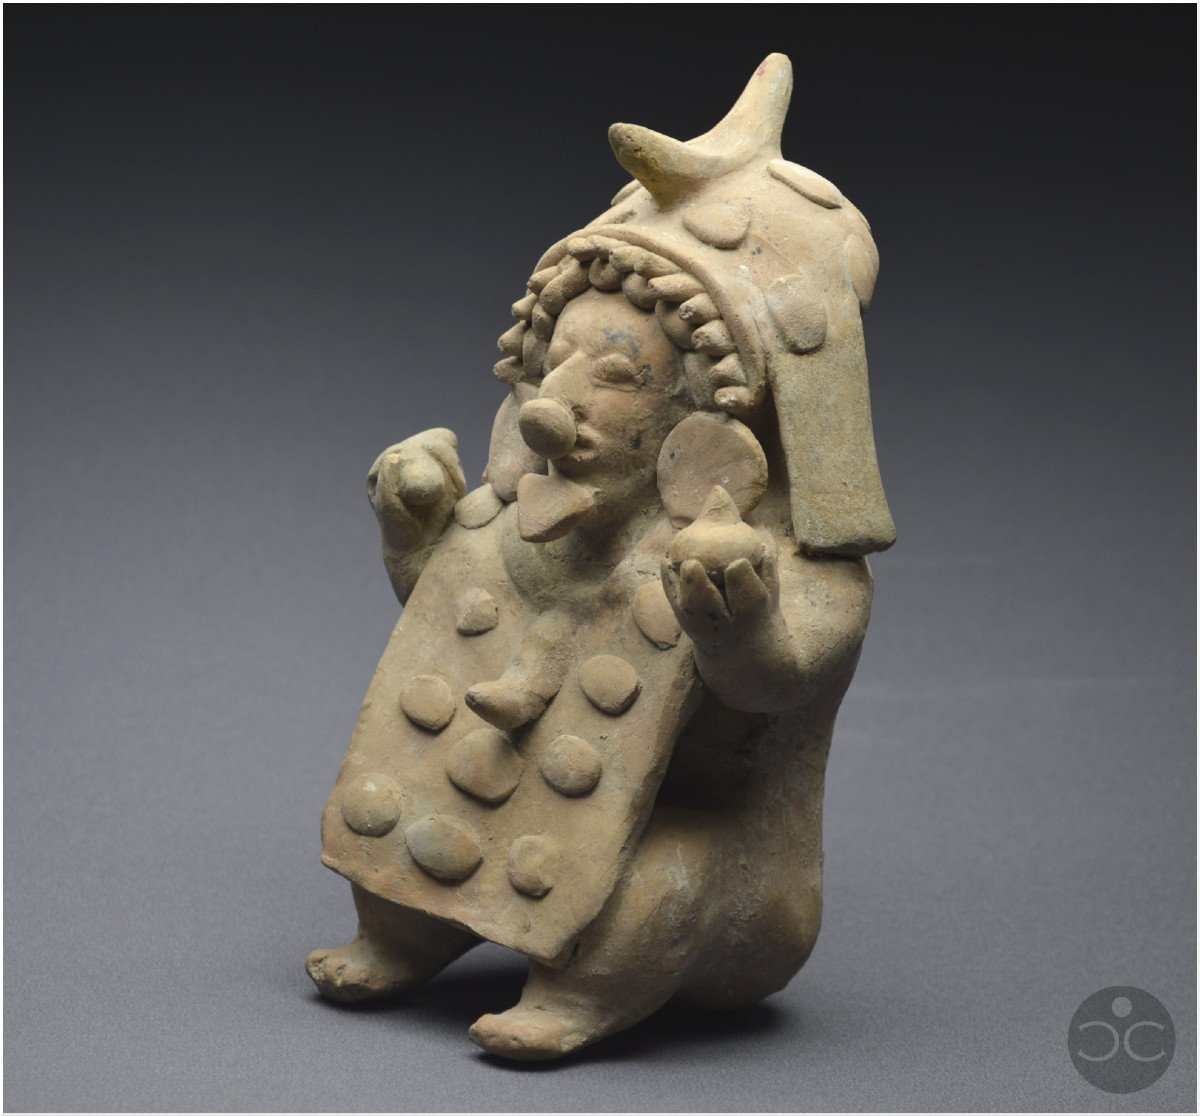 Équateur, 500 av - 500 ap J. -C., Culture Jama-Coaque, Shaman aux offrandes, Céramique ocre-photo-4